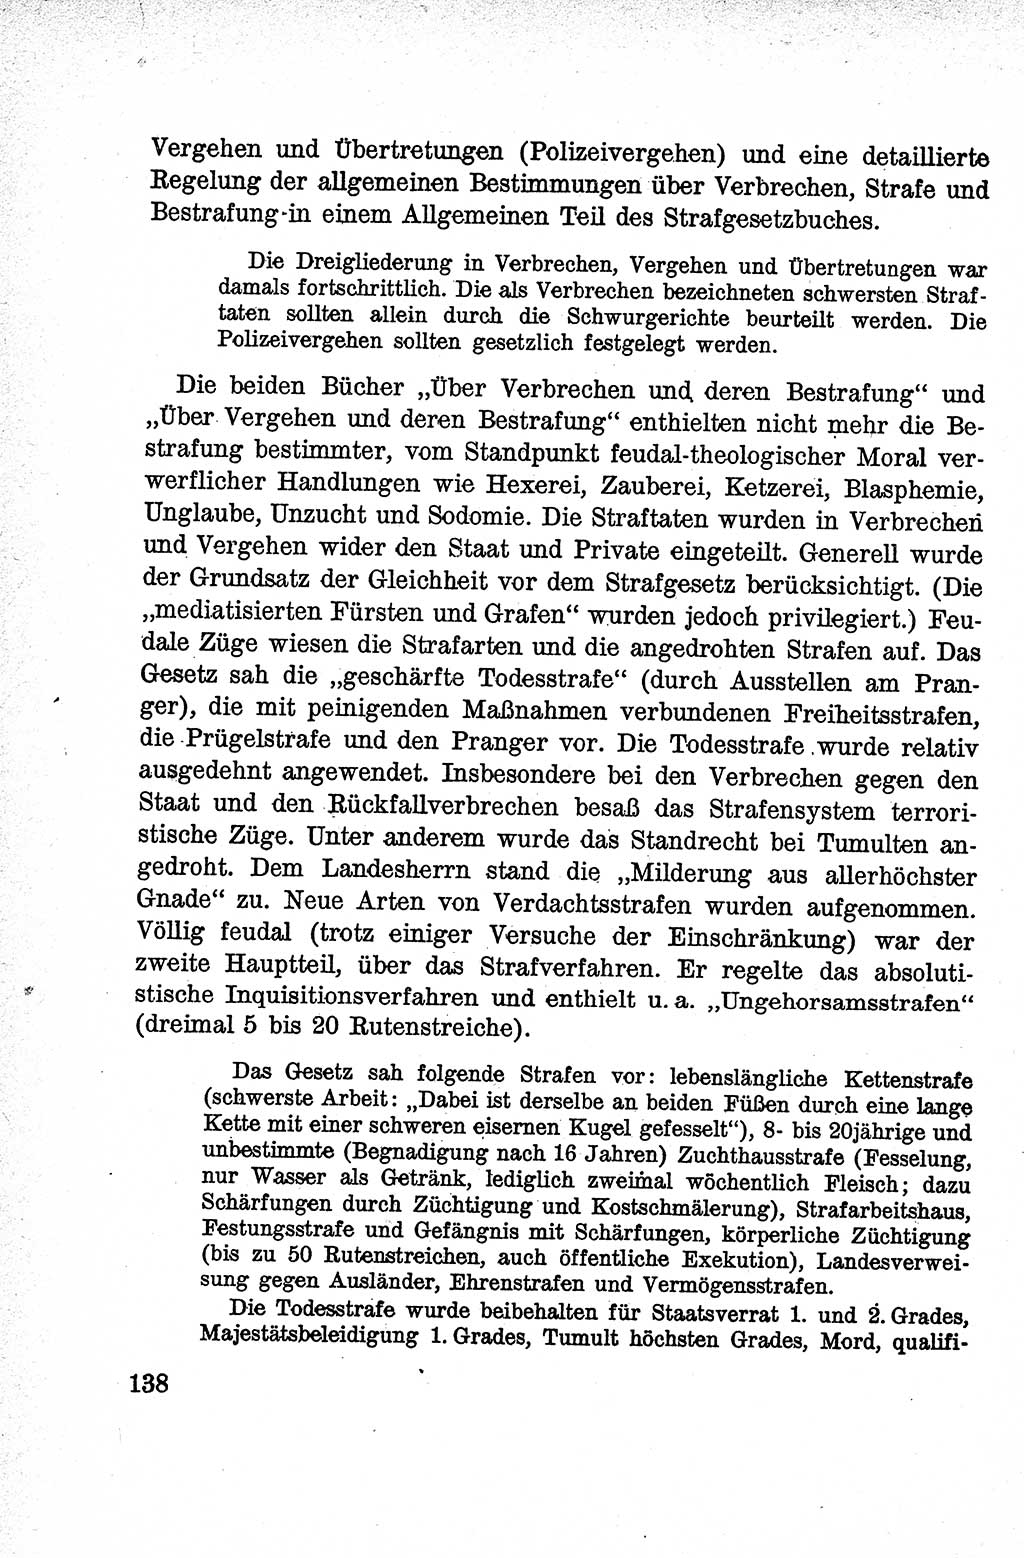 Lehrbuch des Strafrechts der Deutschen Demokratischen Republik (DDR), Allgemeiner Teil 1959, Seite 138 (Lb. Strafr. DDR AT 1959, S. 138)